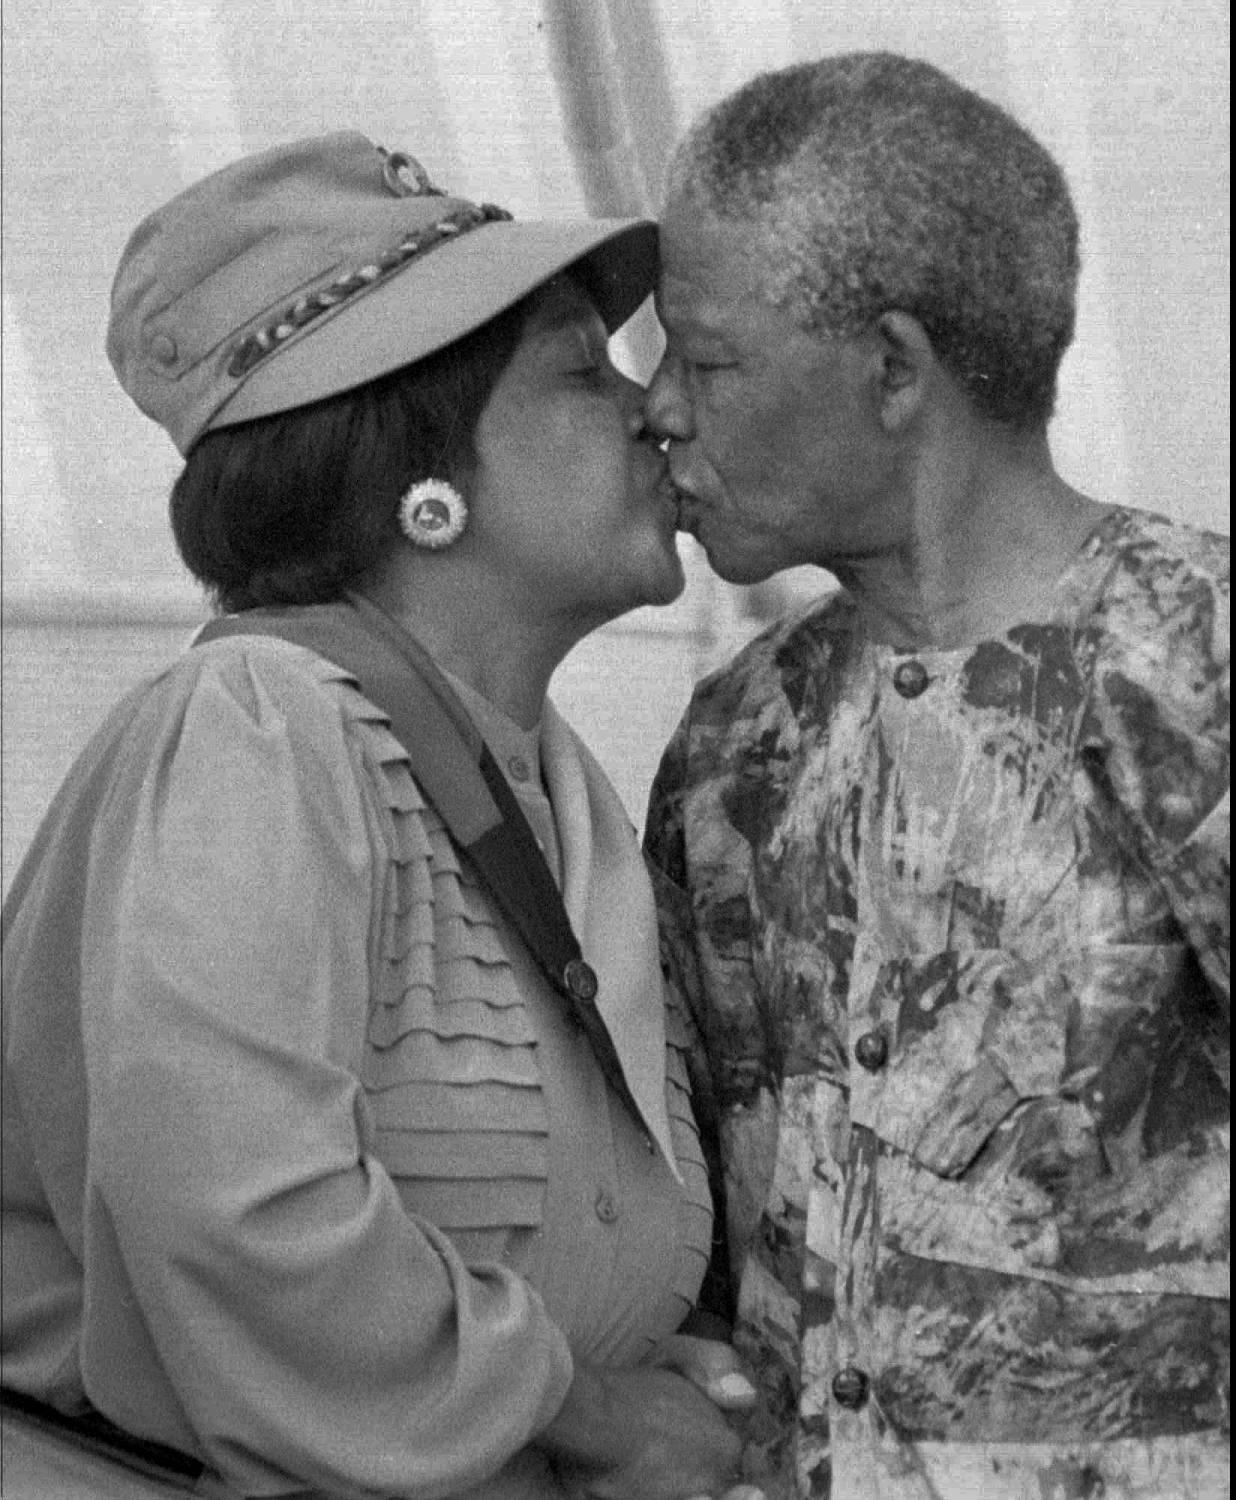 Mandelas andra fru var Winnie Madikizela-Mandela. De träffades i Johannesburg där hon var stadens första svarta socialarbetare. Senare skulle Winnie Mandelas familjeband slitas av samma konflikt som hemsökte landet under samma period; samtidigt som hennes make satt fängslad på Robben Island för terrorism och landsförräderi utnämndes Winnies far till jordbruksminister i Transkeiprovinsen. Äktenskapet slutade i separation i april 1992 och i skilsmässa i mars 1996. De har två döttrar tillsammans.